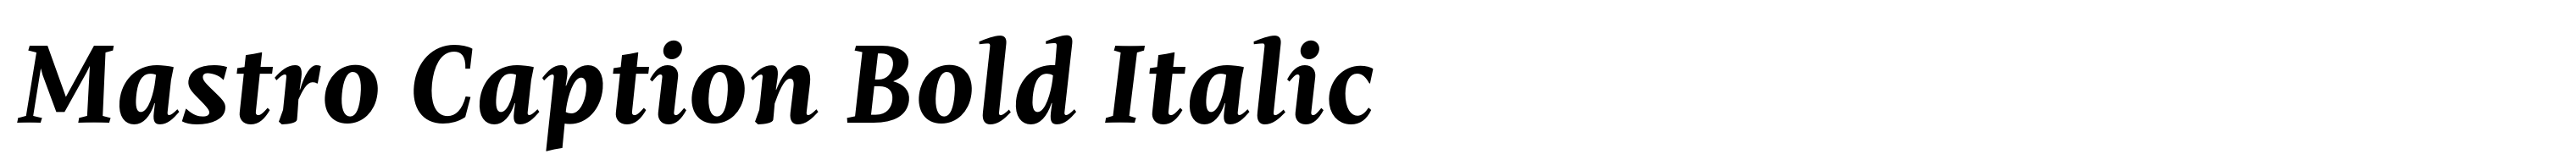 Mastro Caption Bold Italic